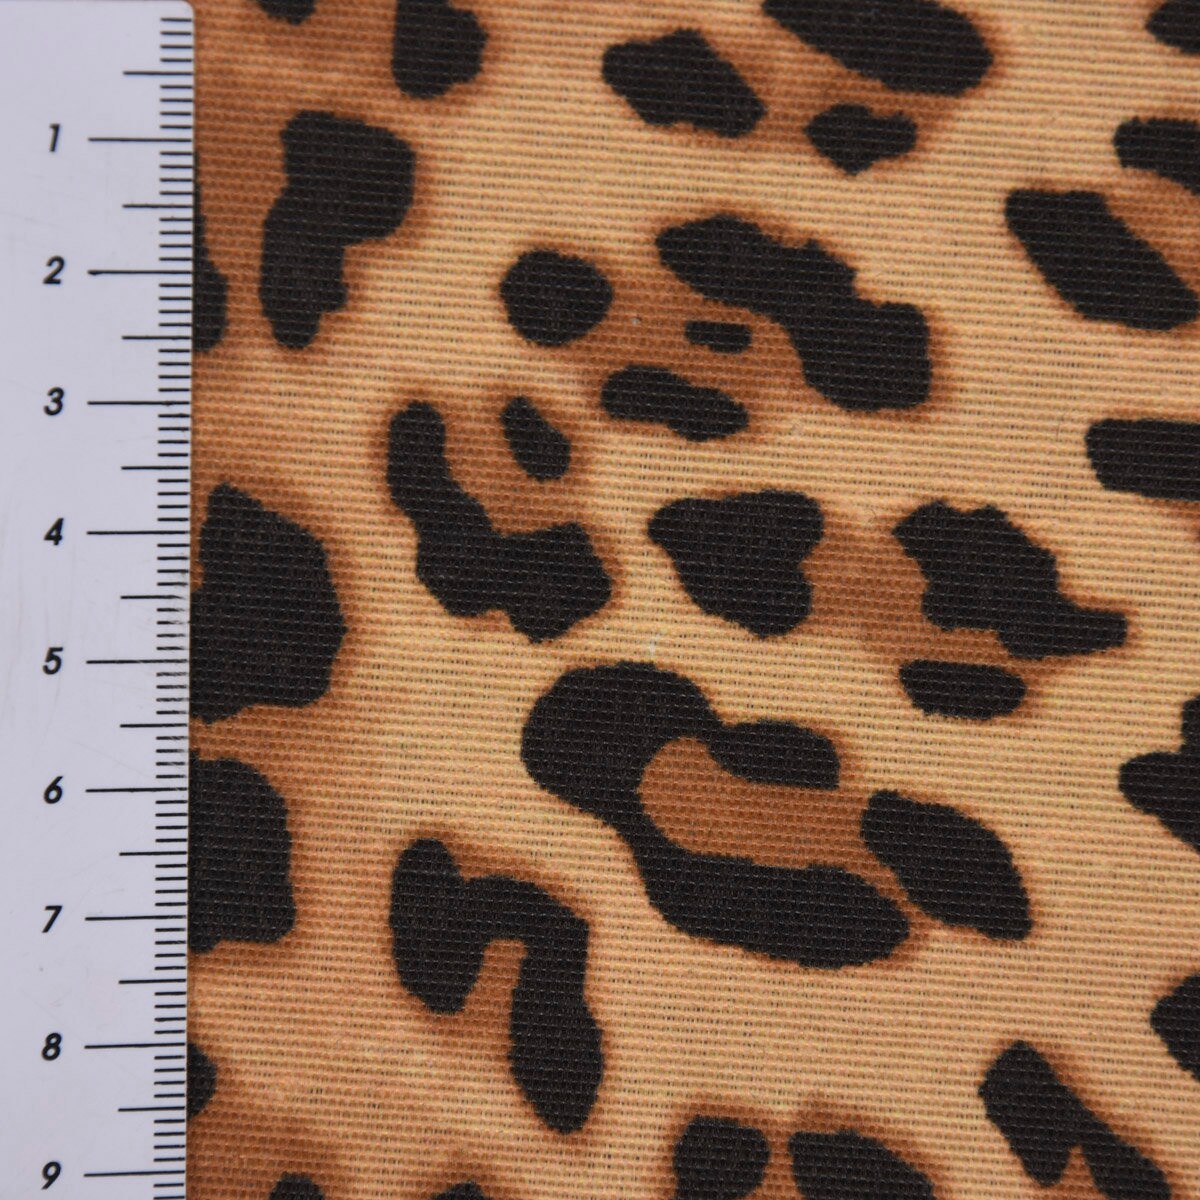 Dekostoff Leopardenmuster, braun schwarz ockergelb